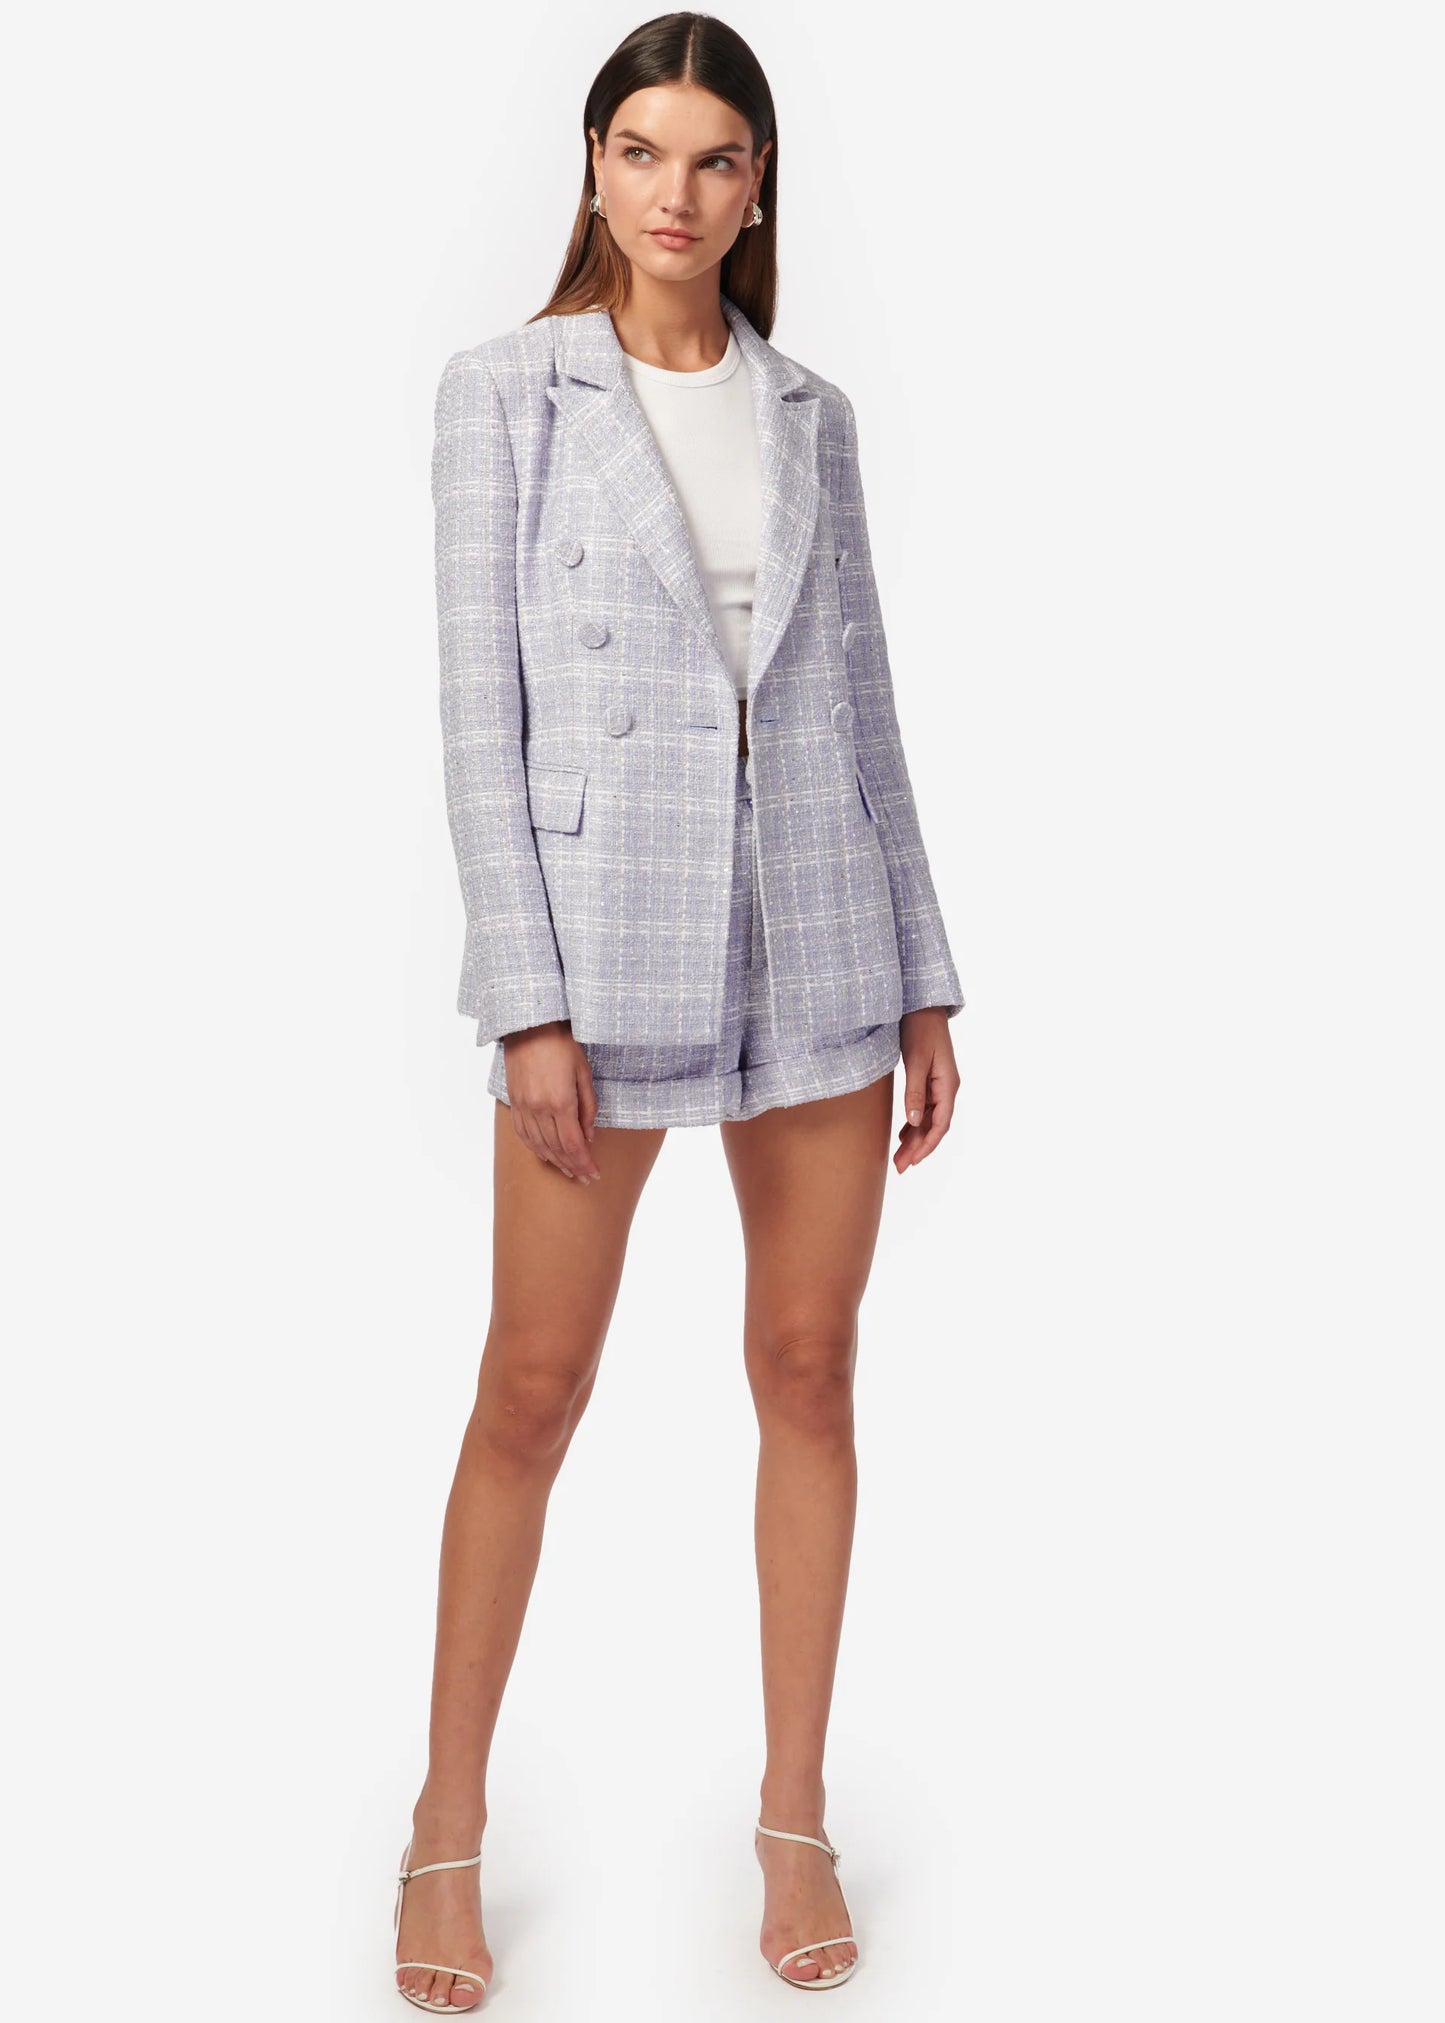 Bruna Tweed Blazer in White/Delphinium